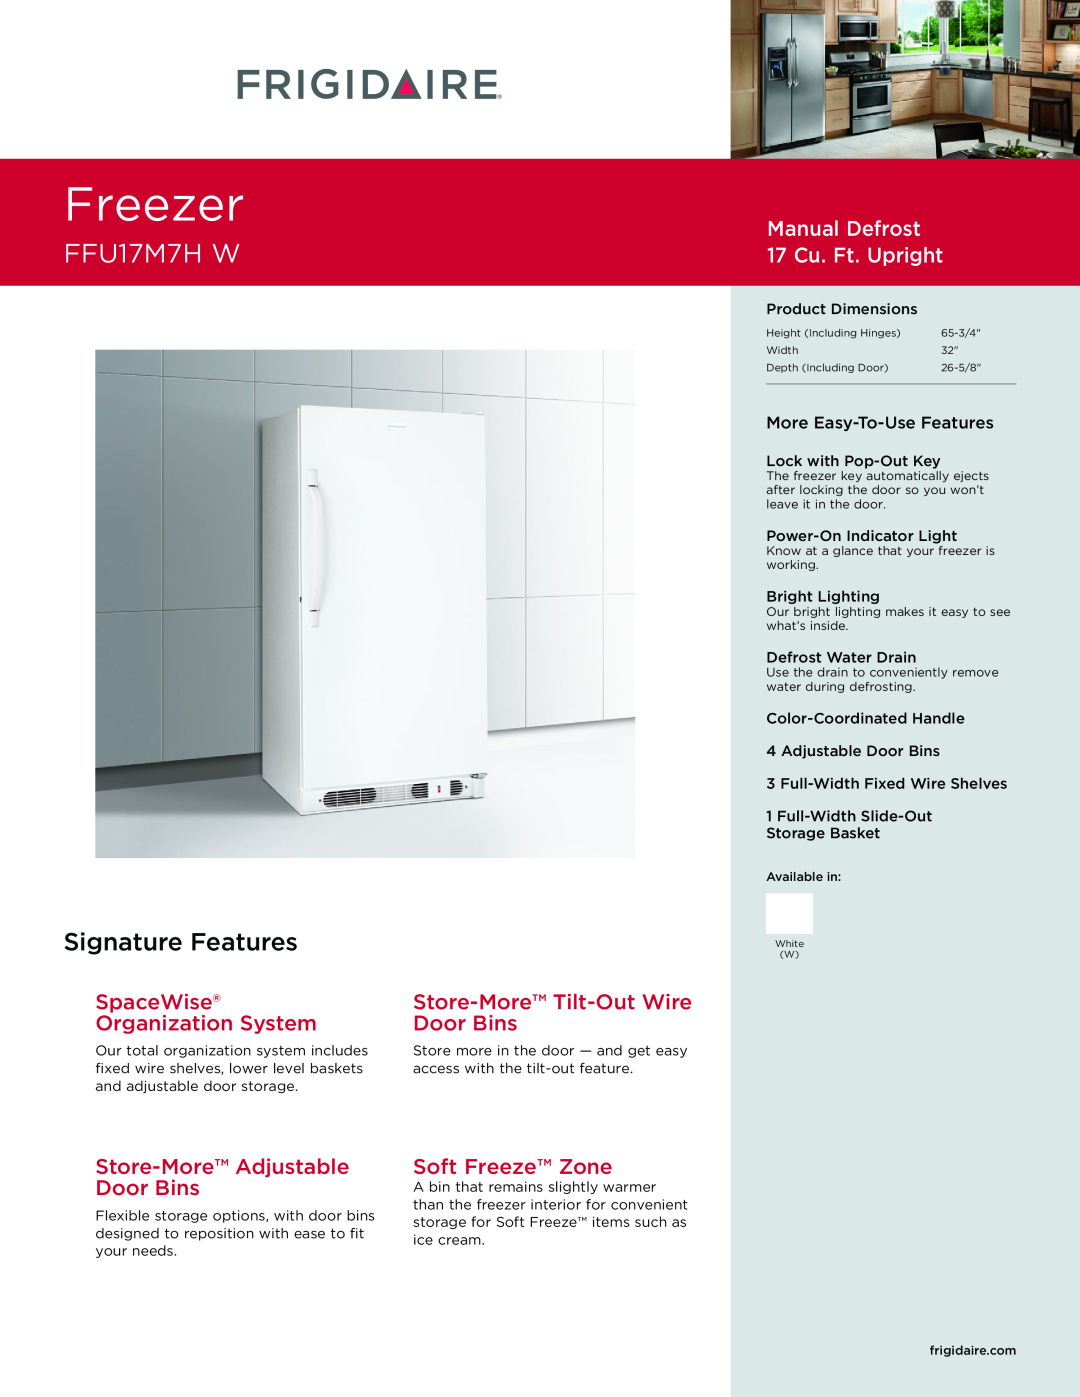 Frigidaire FFU17M7HW dimensions Freezer, FFU17M7H W, Signature Features, Manual Defrost 17 Cu. Ft. Upright 